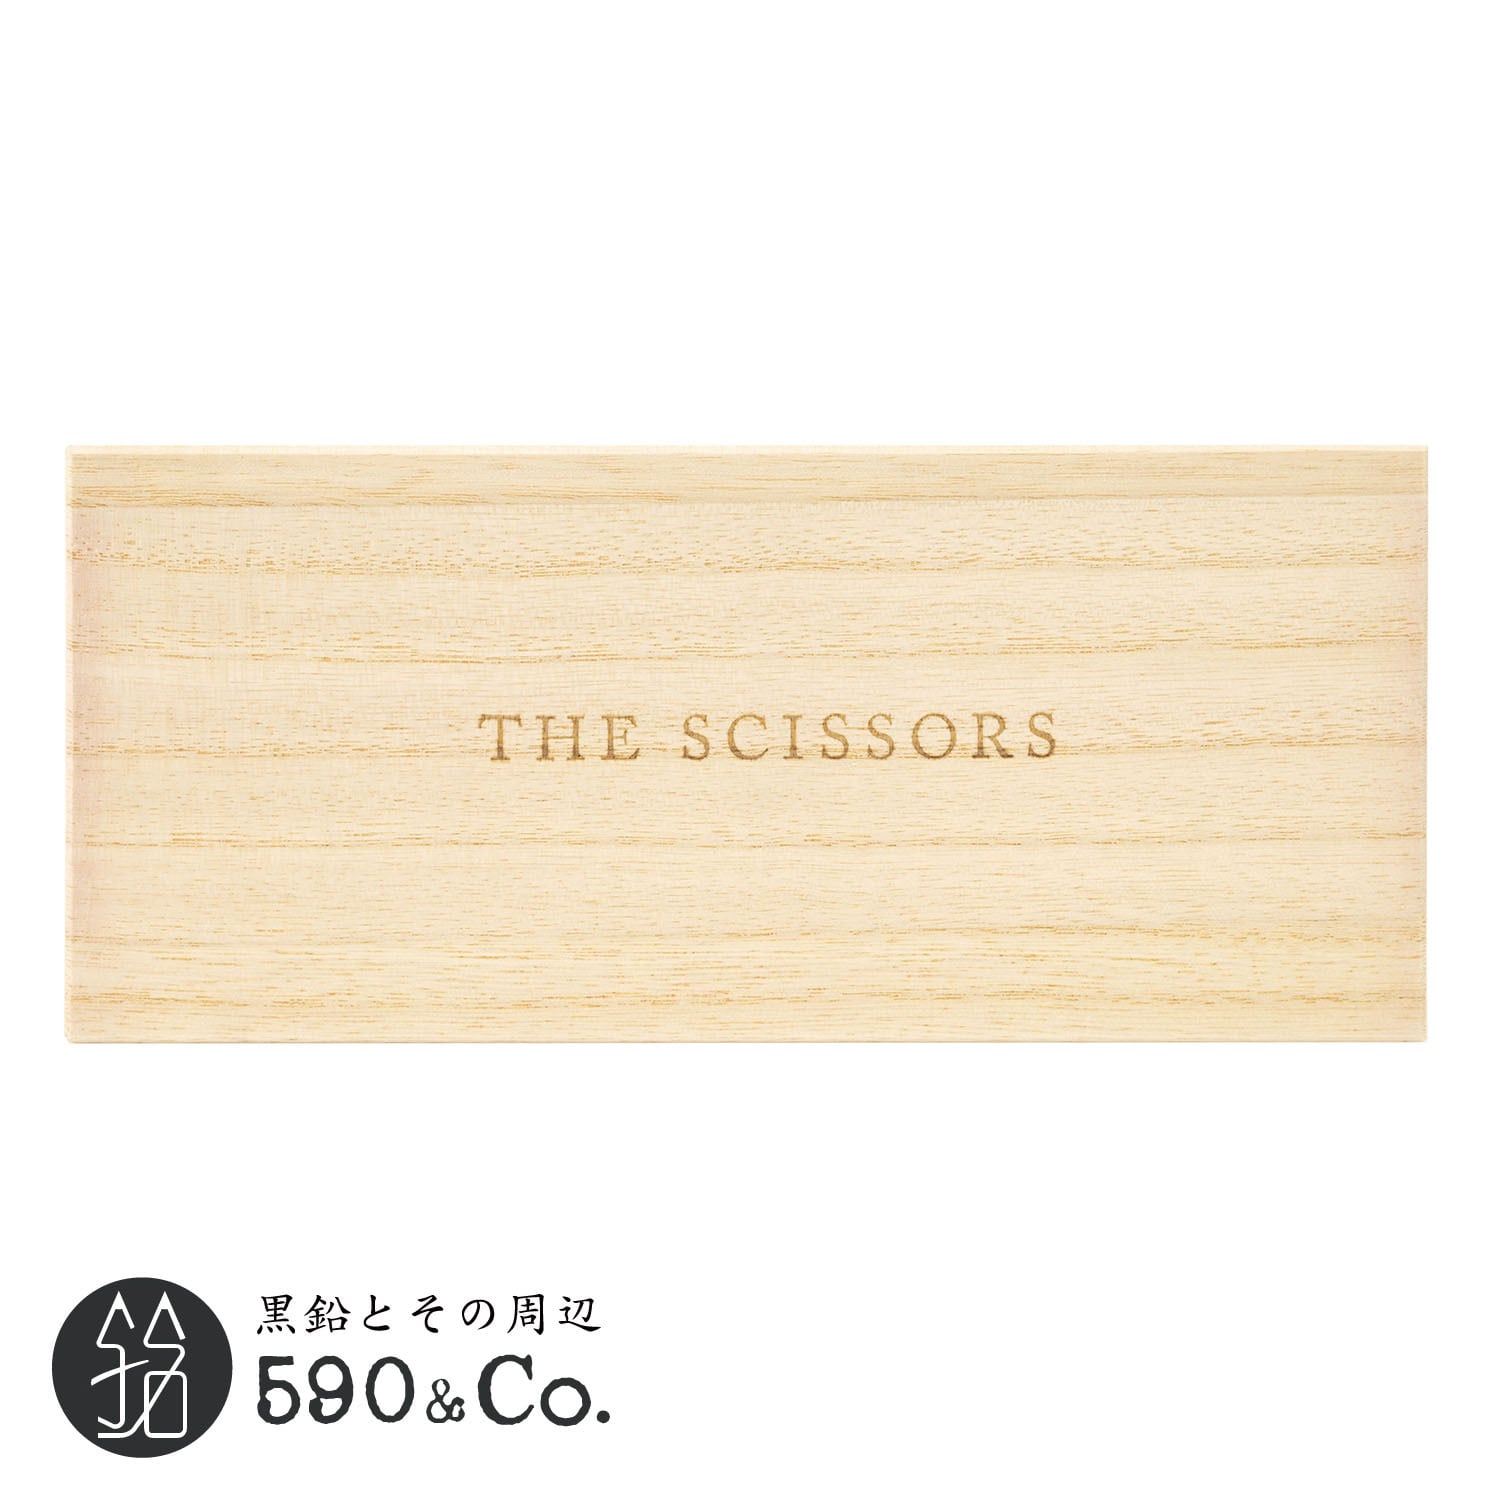 【中川政七商店】THE SCISSORS (マット) 590Co.